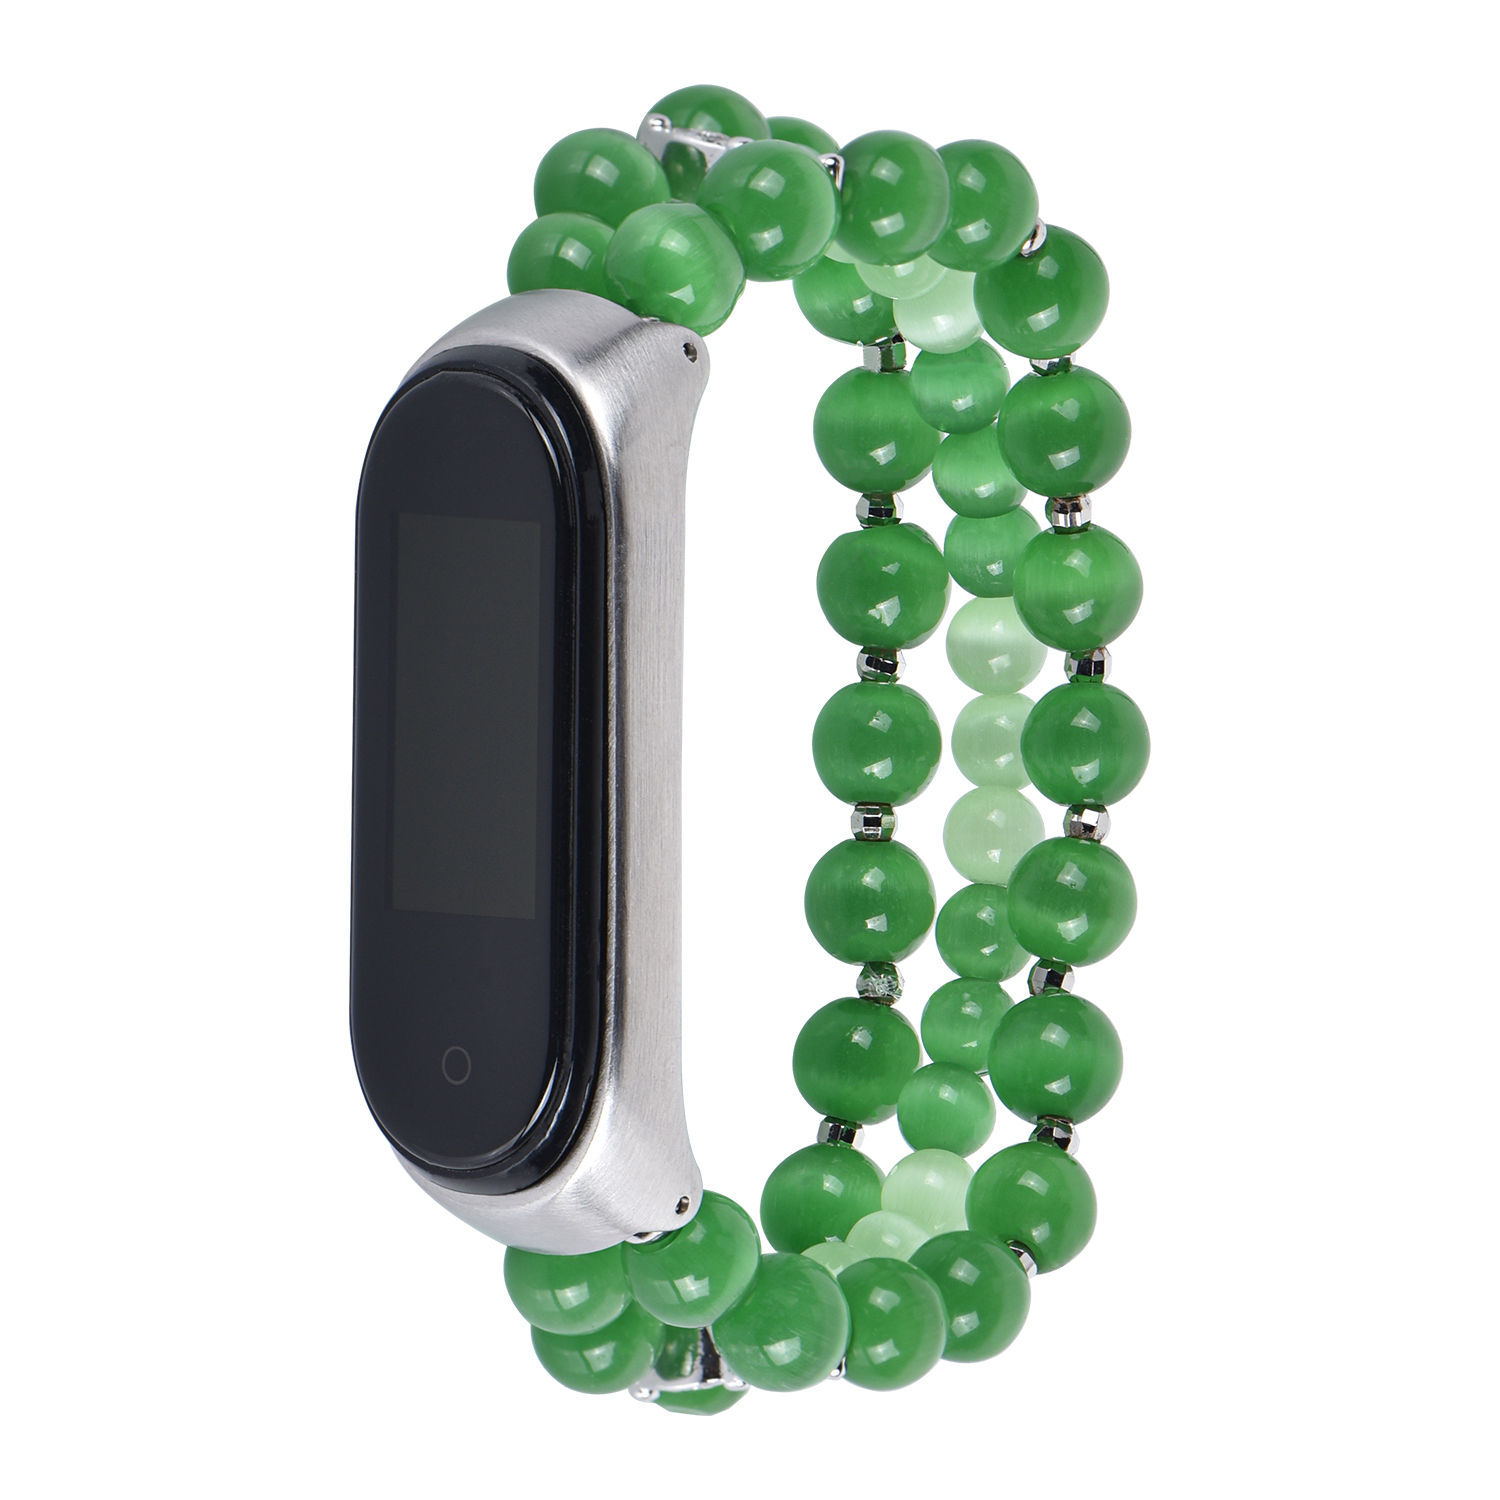 CBXM445 Handmade Jewelry Beads Bracelet Watch Band For Xiaomi Mi Band 4 3